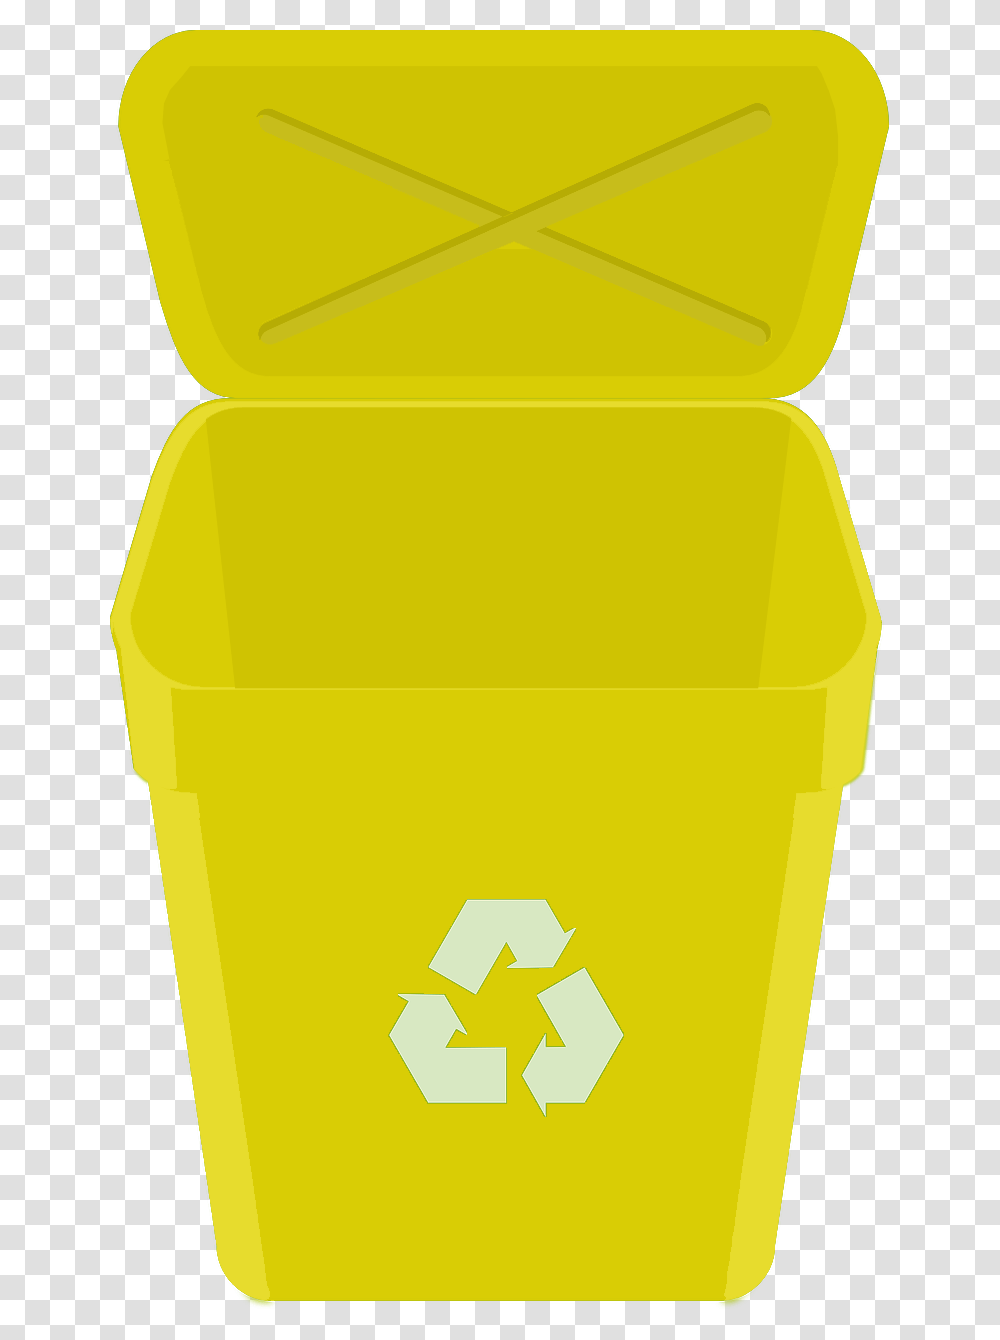 Contenedor Amarillo De Reciclaje, Recycling Symbol, First Aid, Bucket Transparent Png